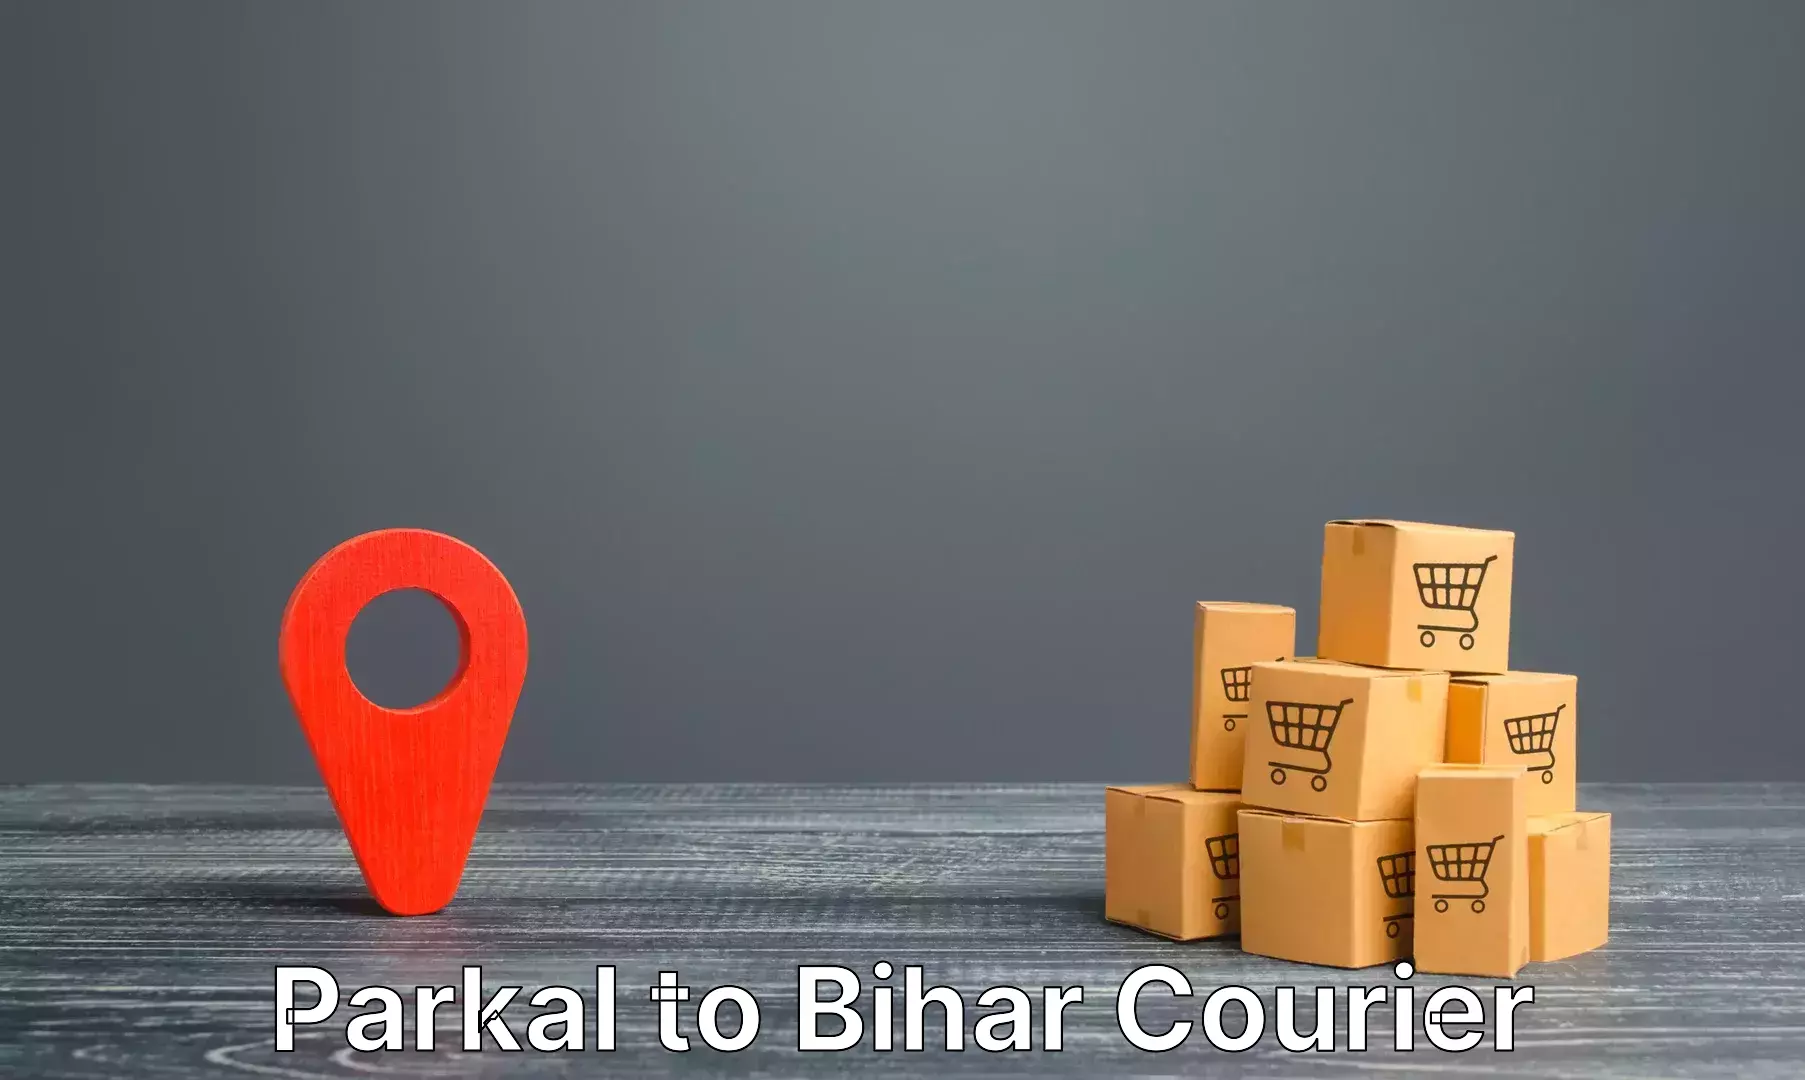 Baggage delivery optimization Parkal to Bakhri